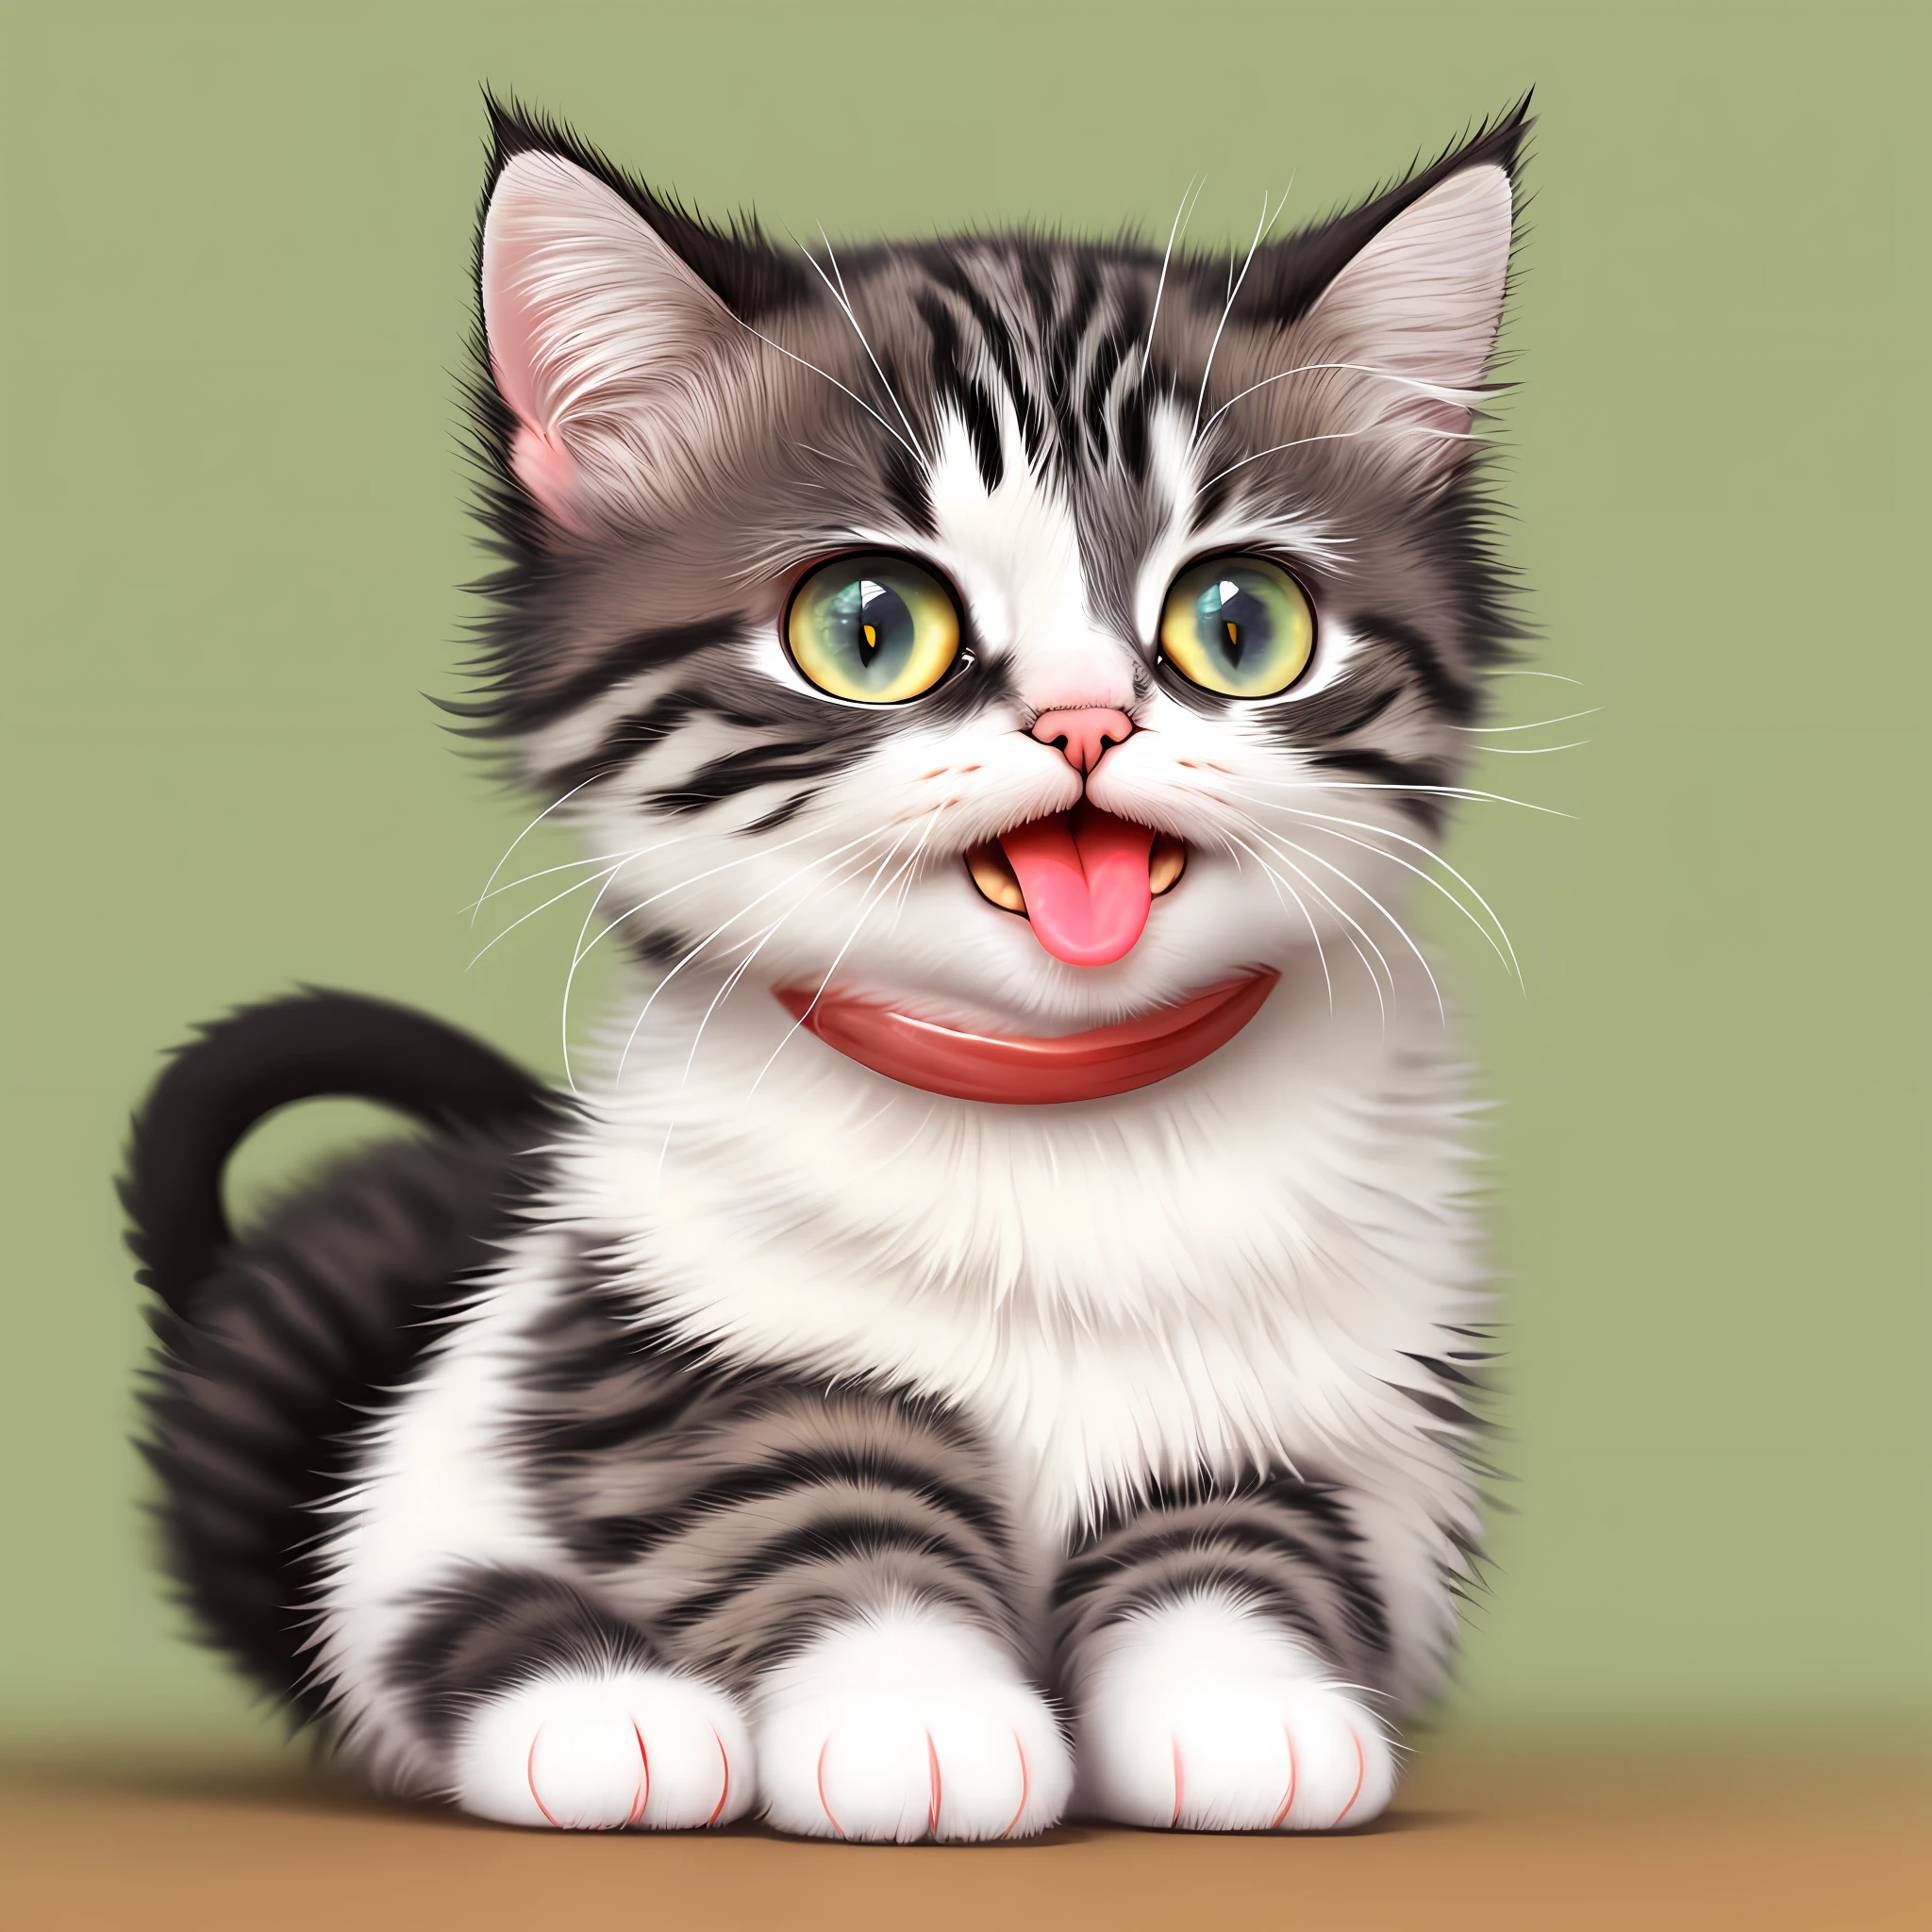 Il y a un chat assis avec la langue tirée, Adorable peinture numérique, chat mignon, mimer